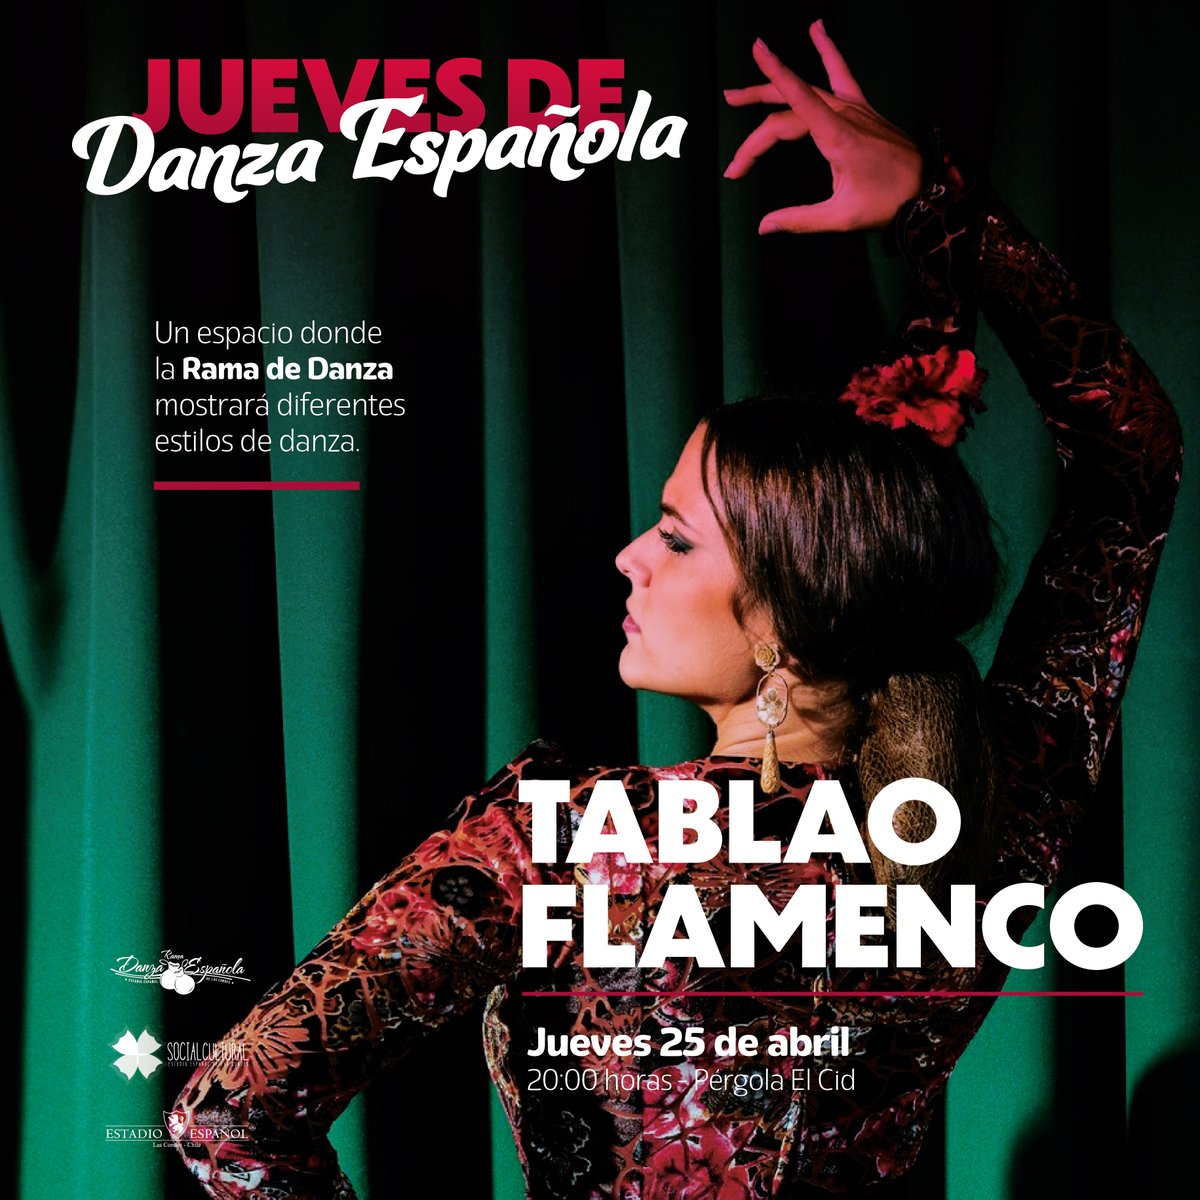 🌹💃 Vive la pasión del flamenco en los Jueves de Danza Española. La Rama de Danza Española de Estadio Español te invita a un emocionante Tablao Flamenco el próximo 25 de abril a las 20:00 horas en la Pérgola 'El Cid'. #EstadioEspañol #DanzaEspañola